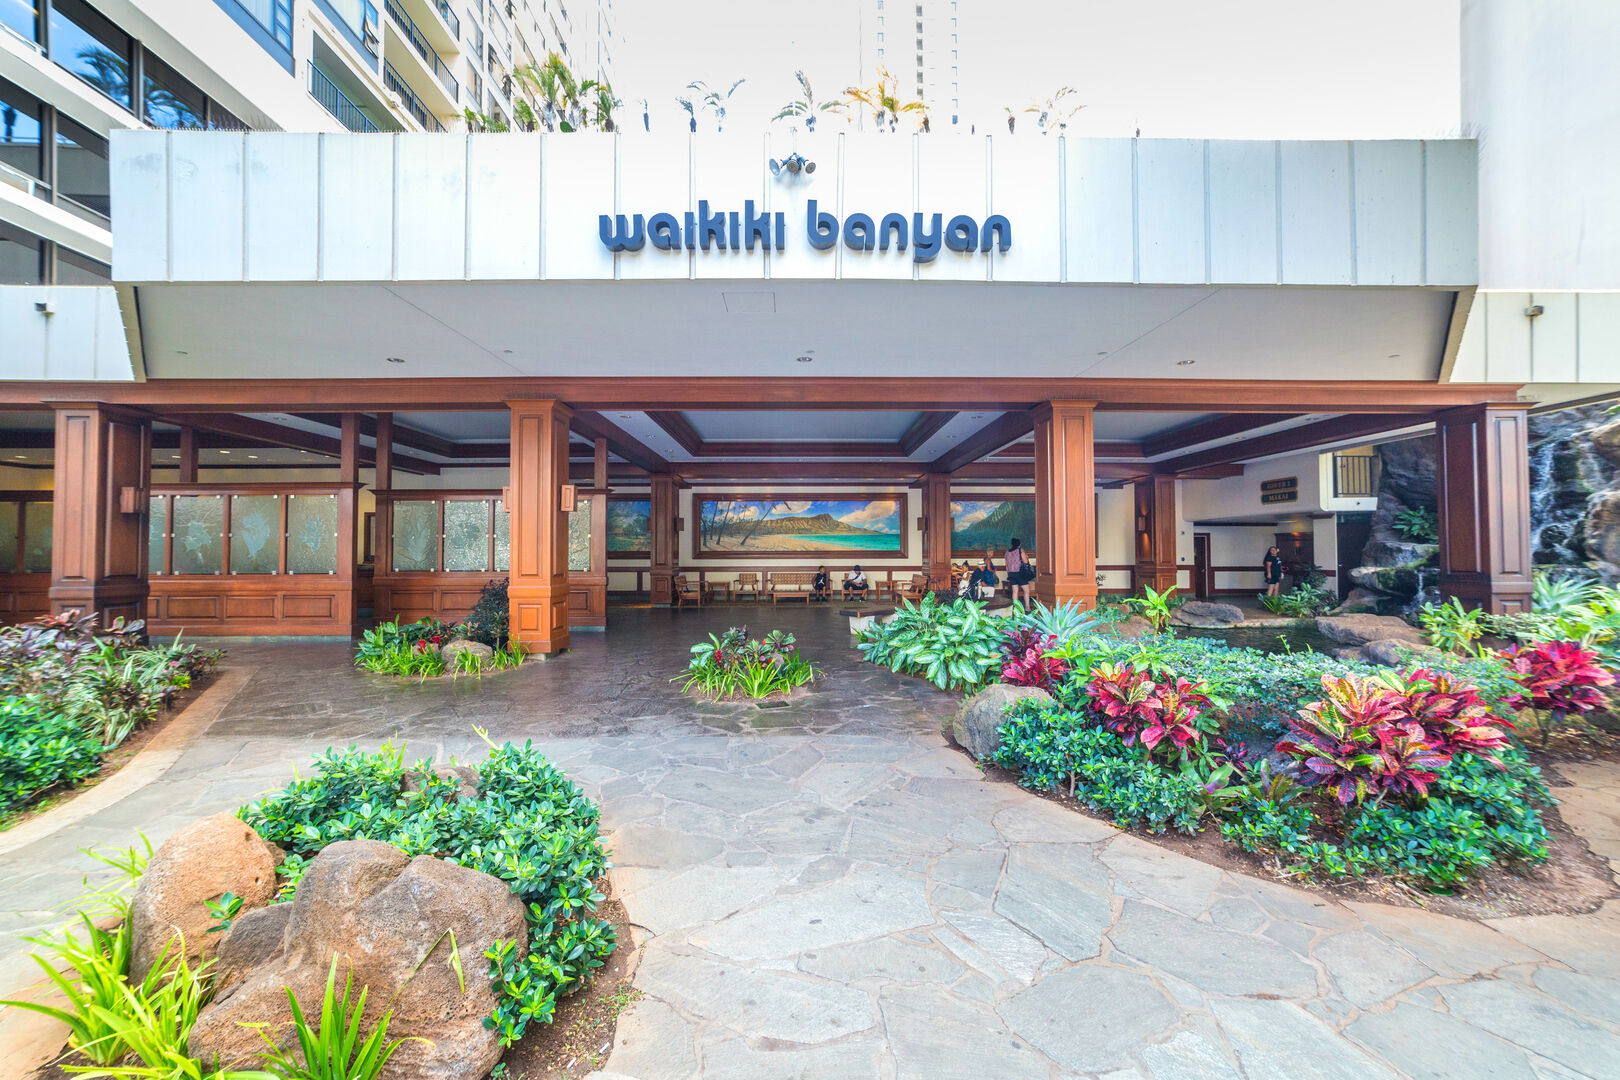 Waikiki Banyan entrance, open 24/7